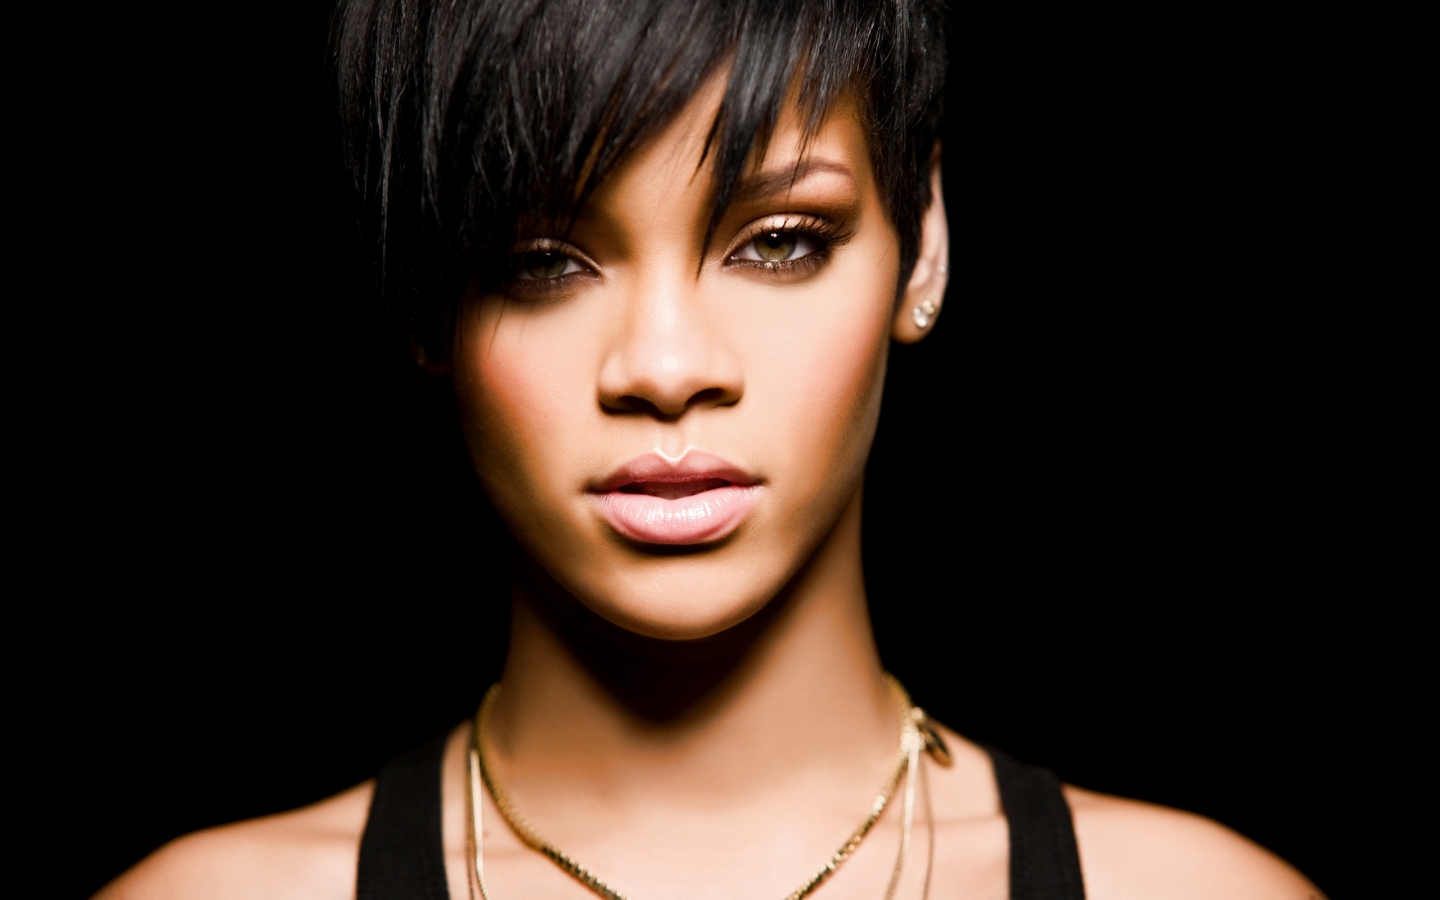 Rihanna for 1440 x 900 widescreen resolution